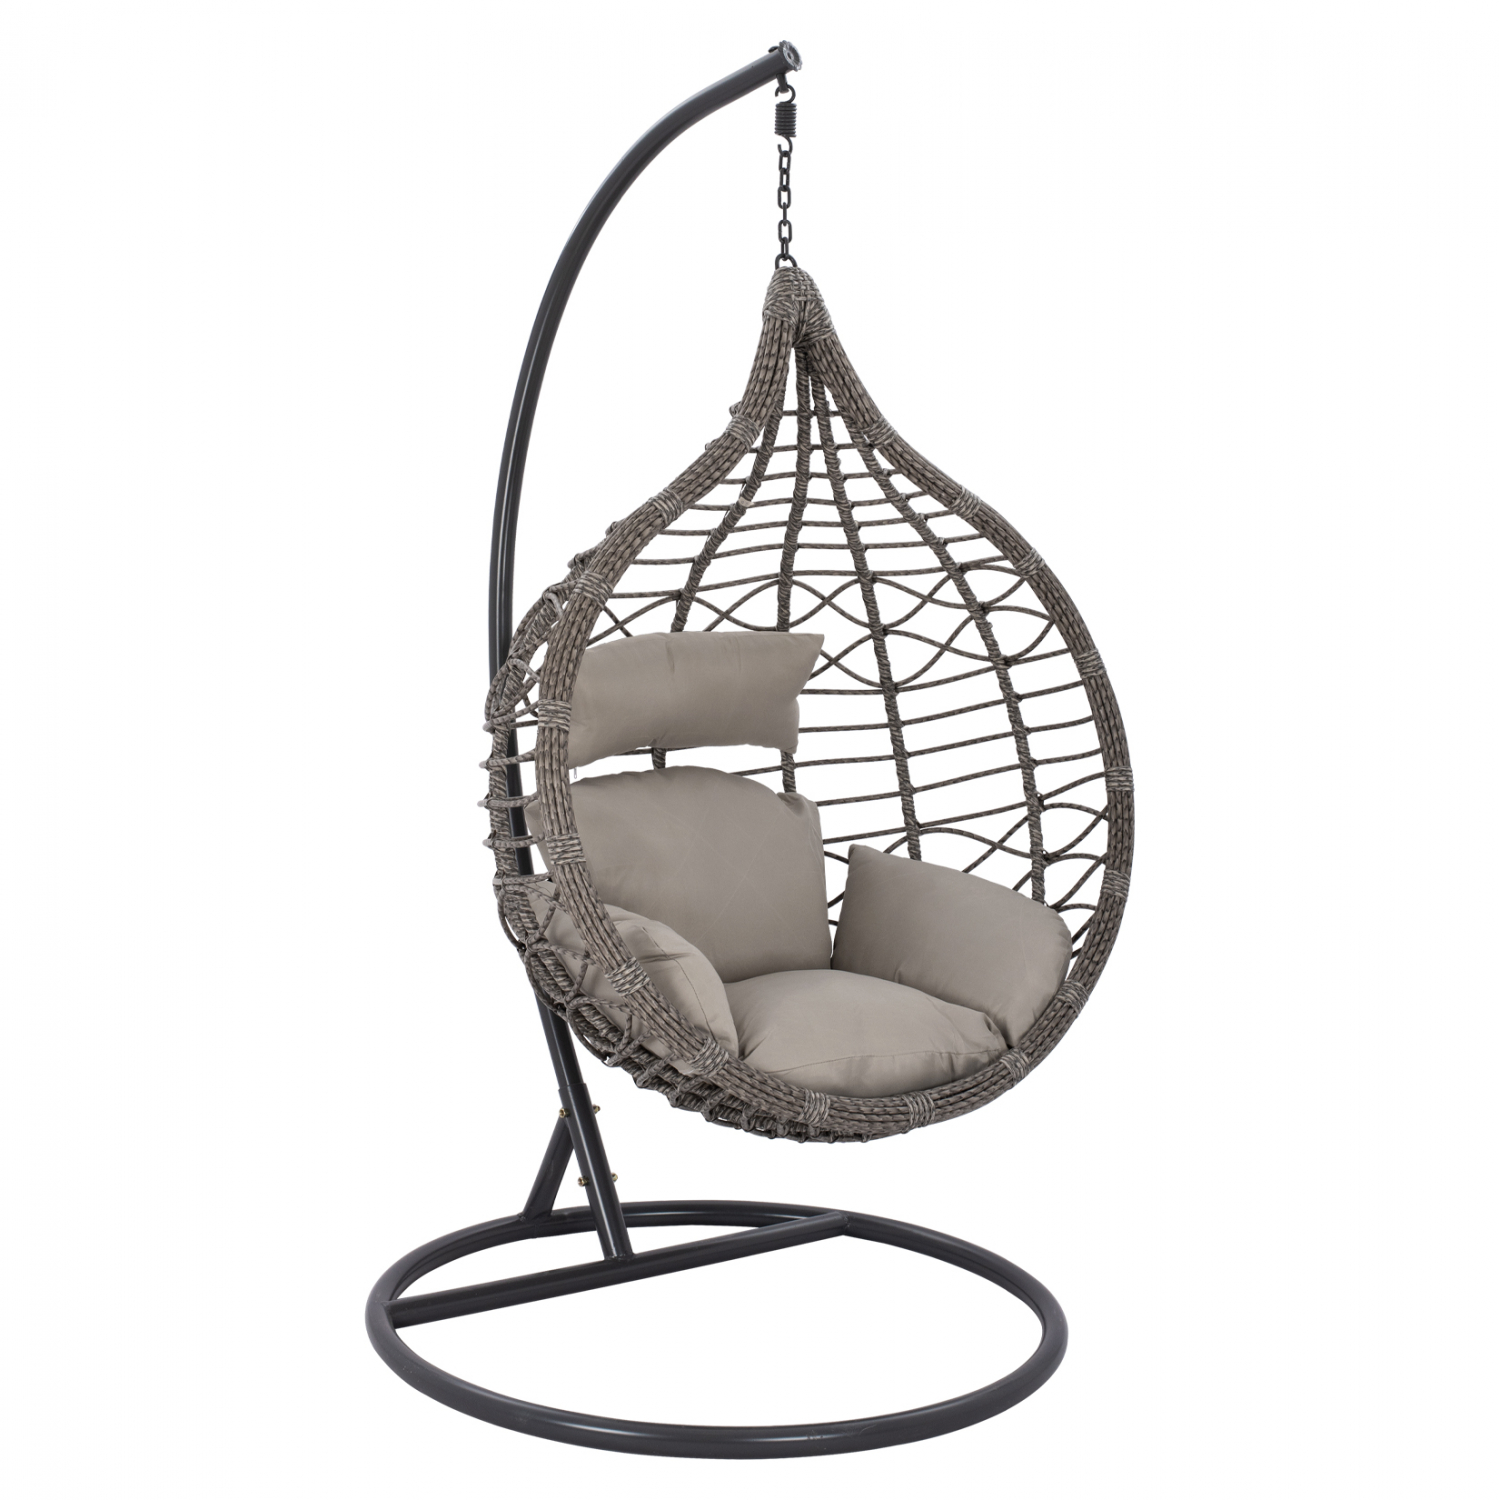 Κρεμαστή πολυθρόνα-φωλιά από μέταλλο-wicker σε μαύρο-γκρι χρώμα 105x65x130